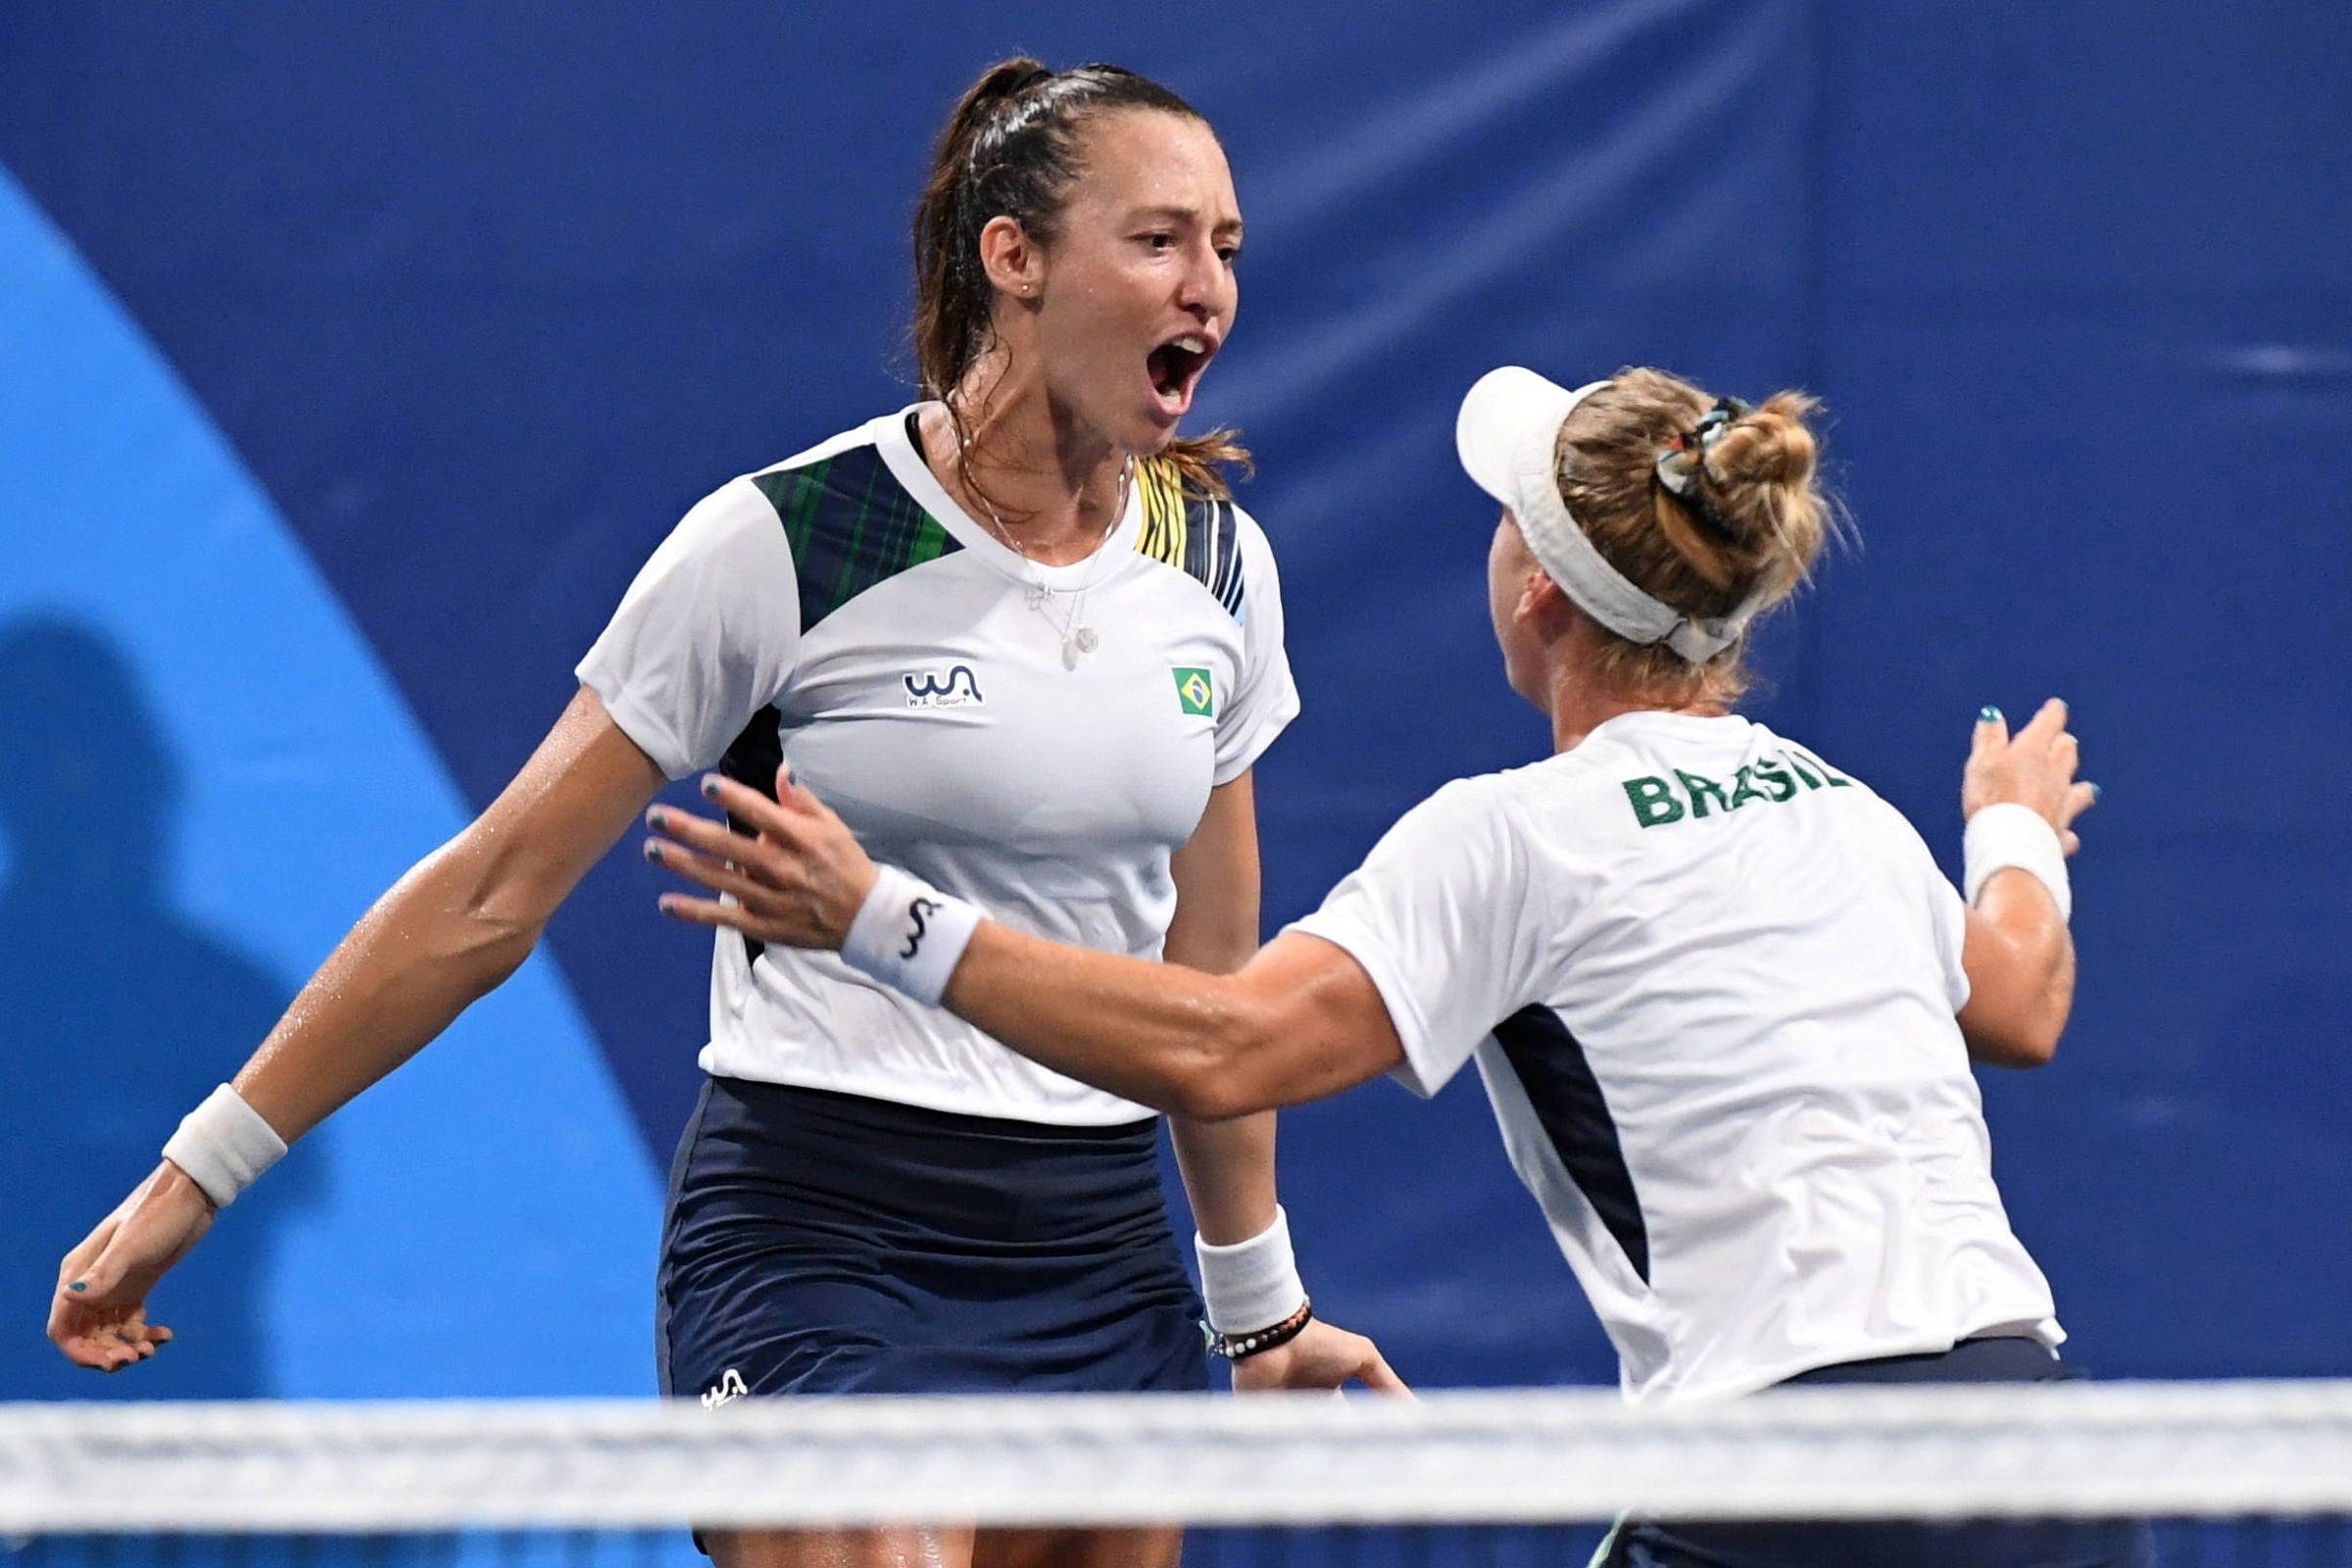 Tênis feminino do Brasil enfileira recordes e vive melhor fase em